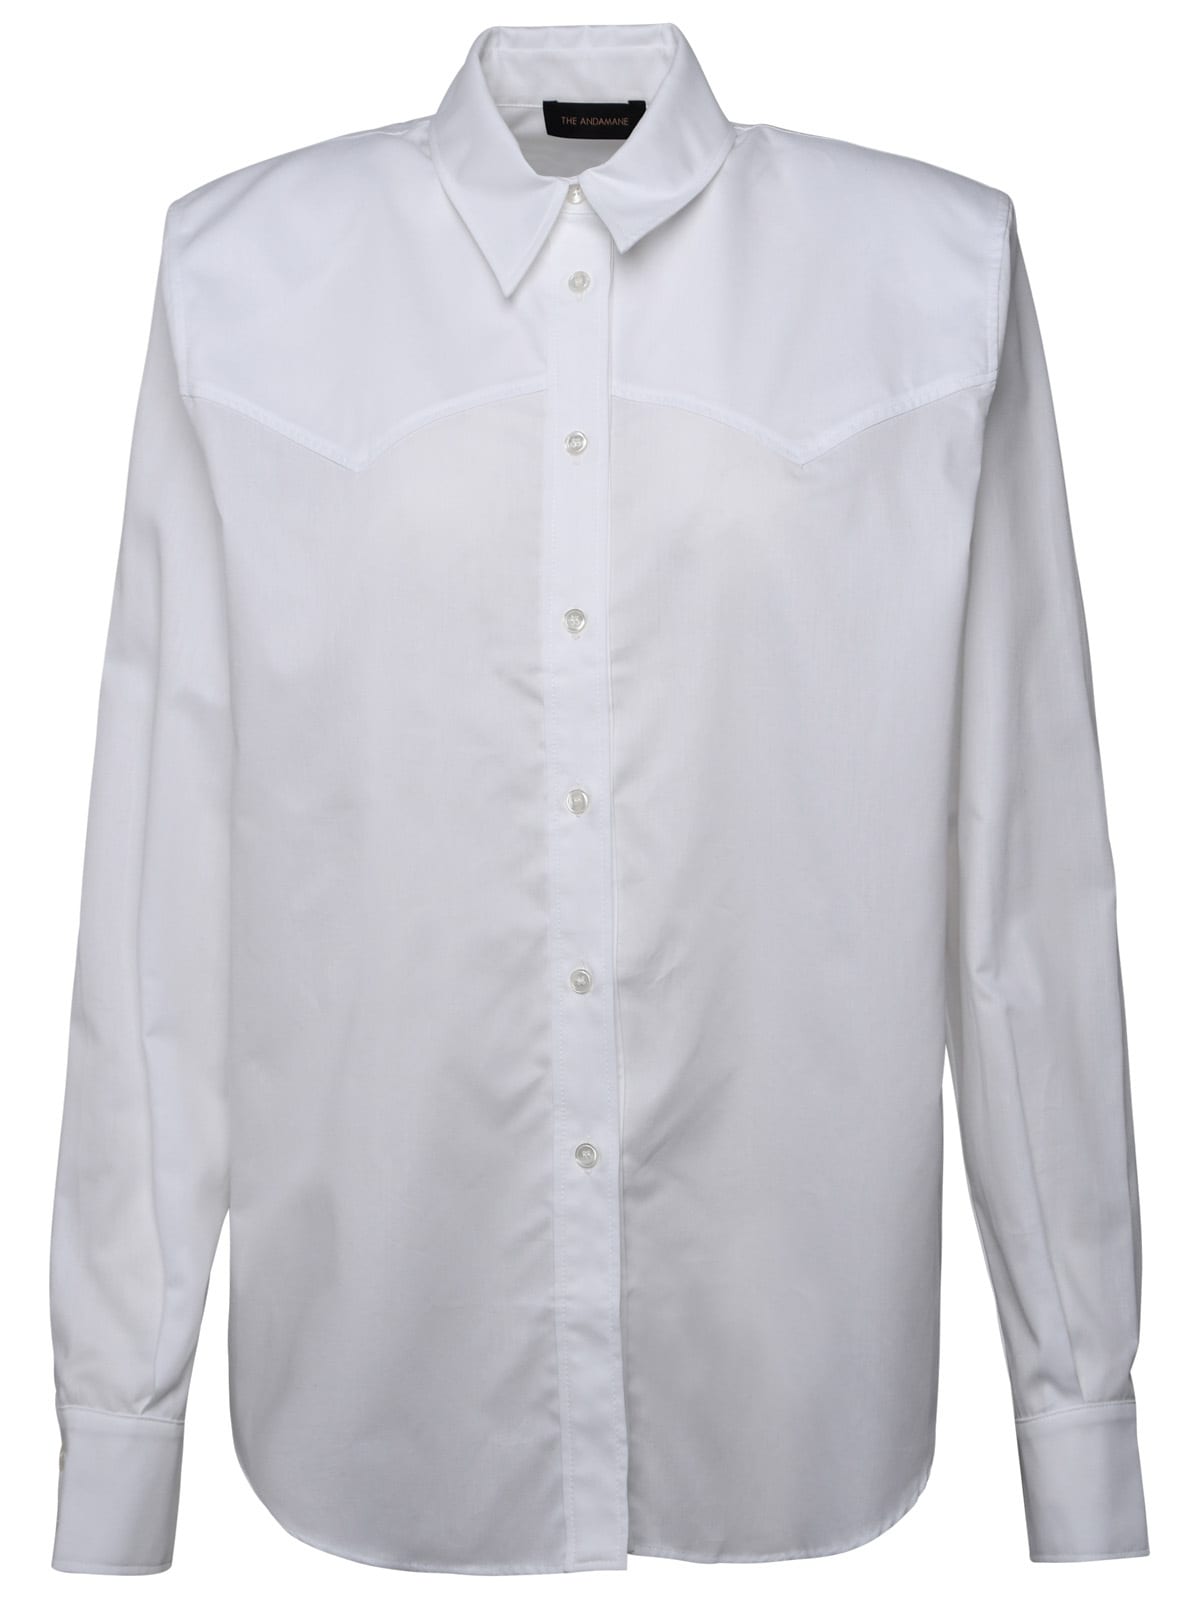 Nashville White Cotton Shirt